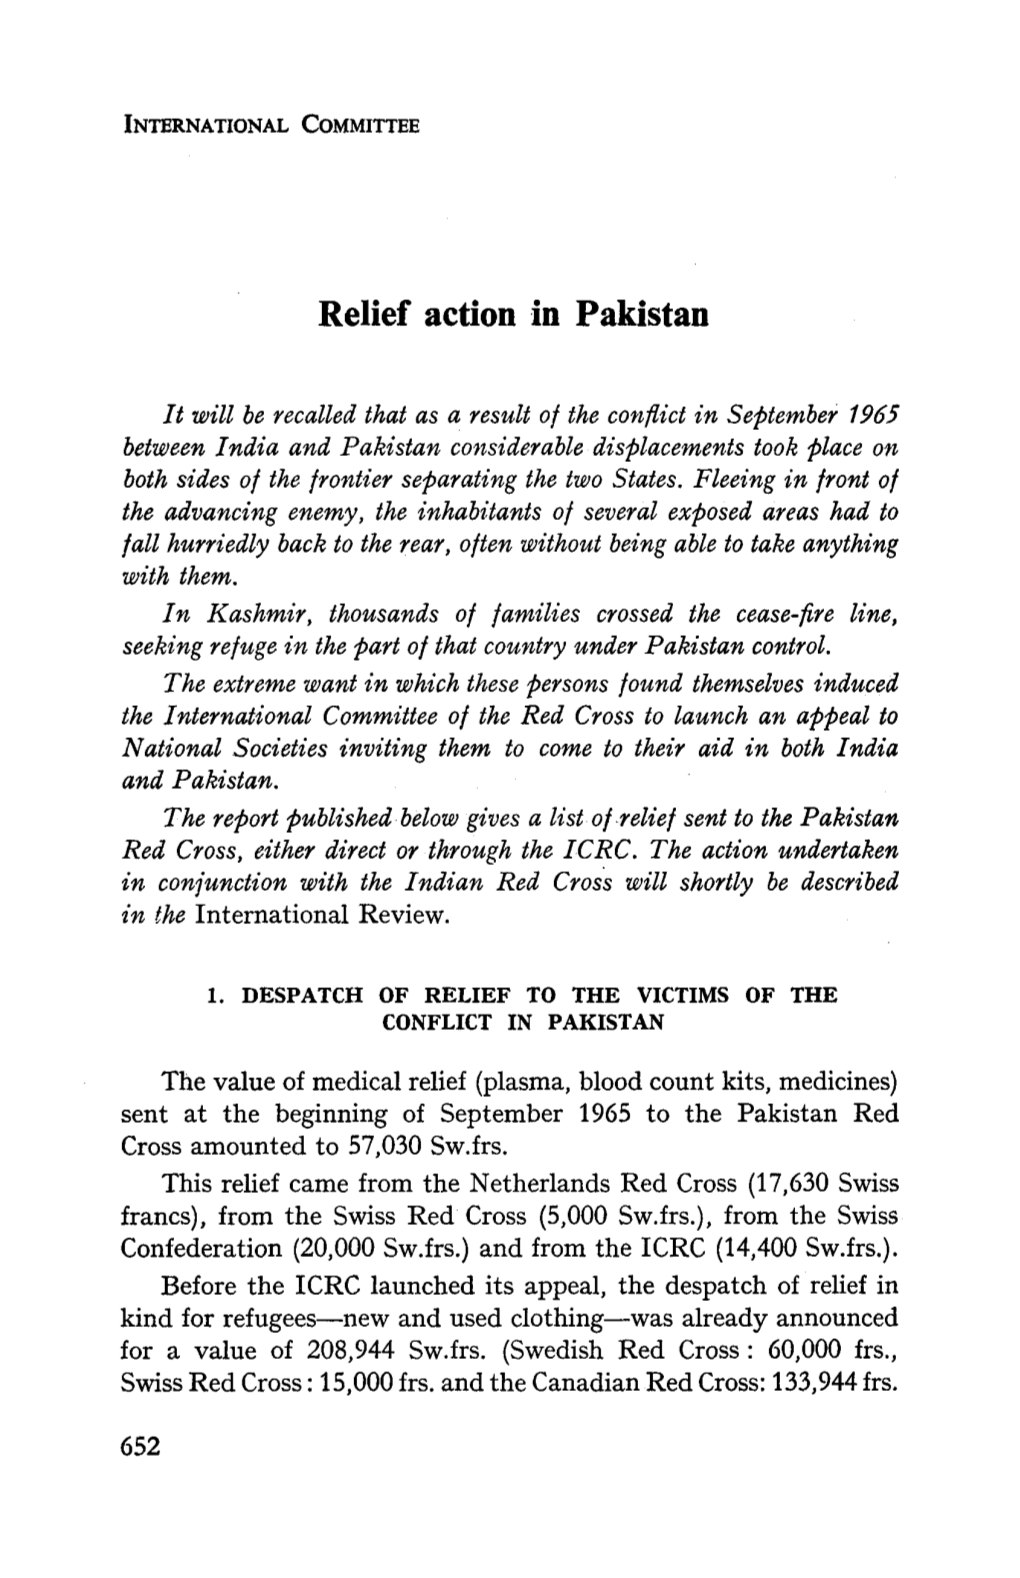 Relief Action in Pakistan